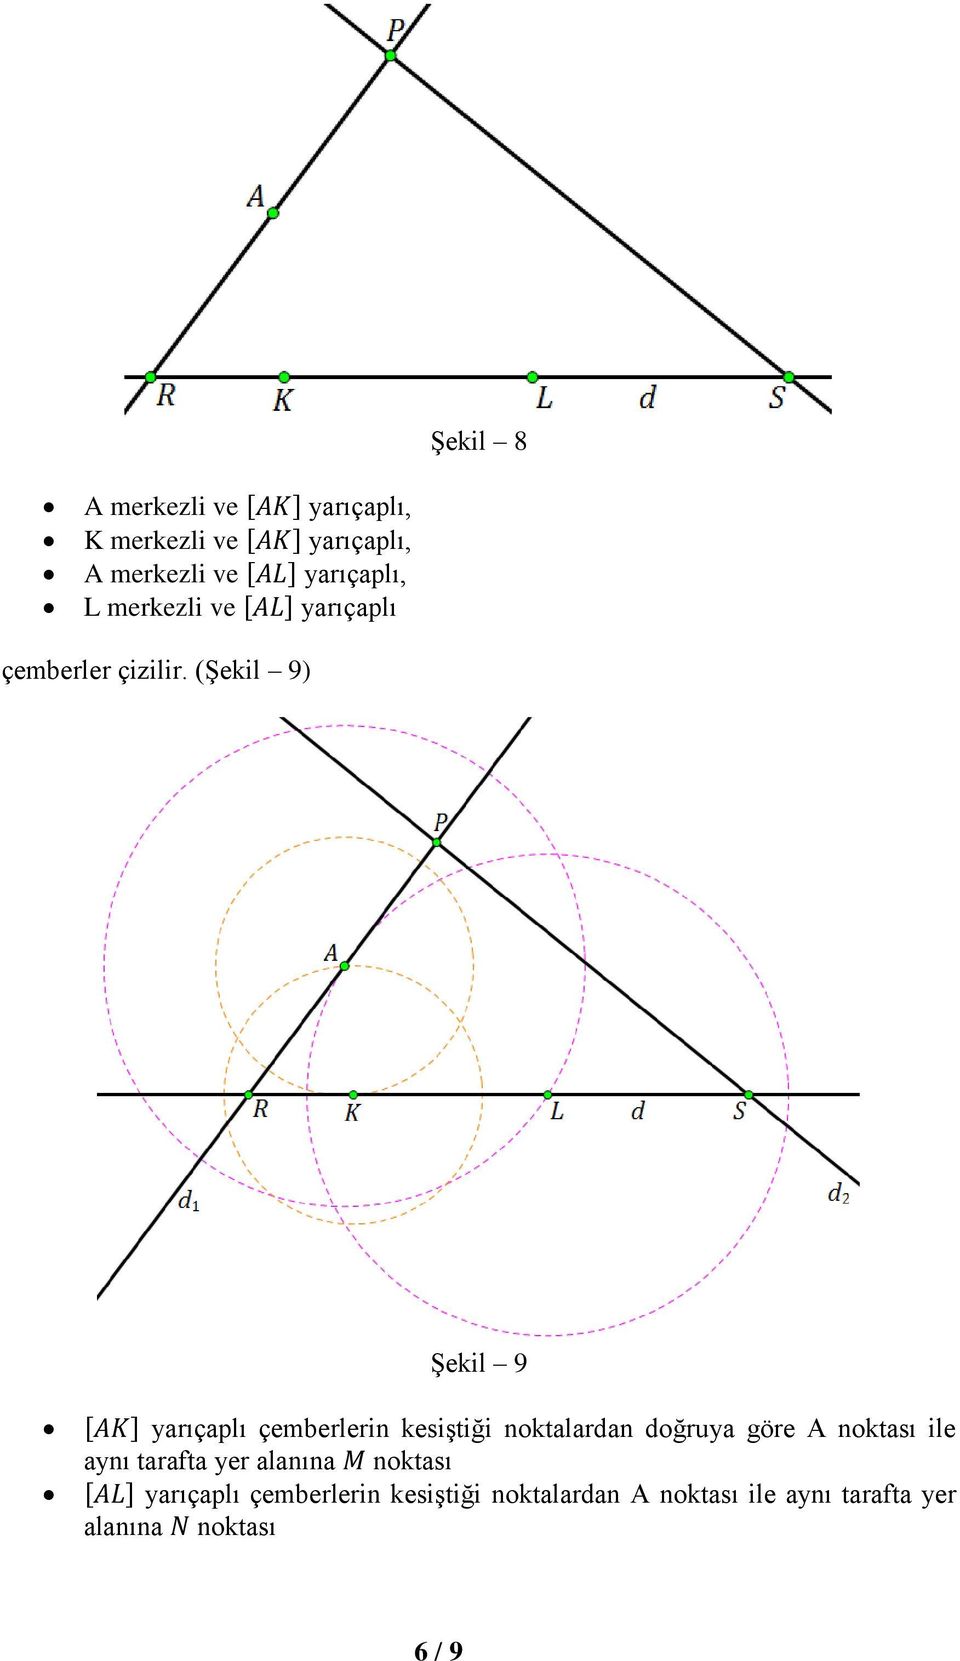 (Şekil 9) Şekil 9 yarıçaplı çemberlerin kesiştiği noktalardan doğruya göre A noktası